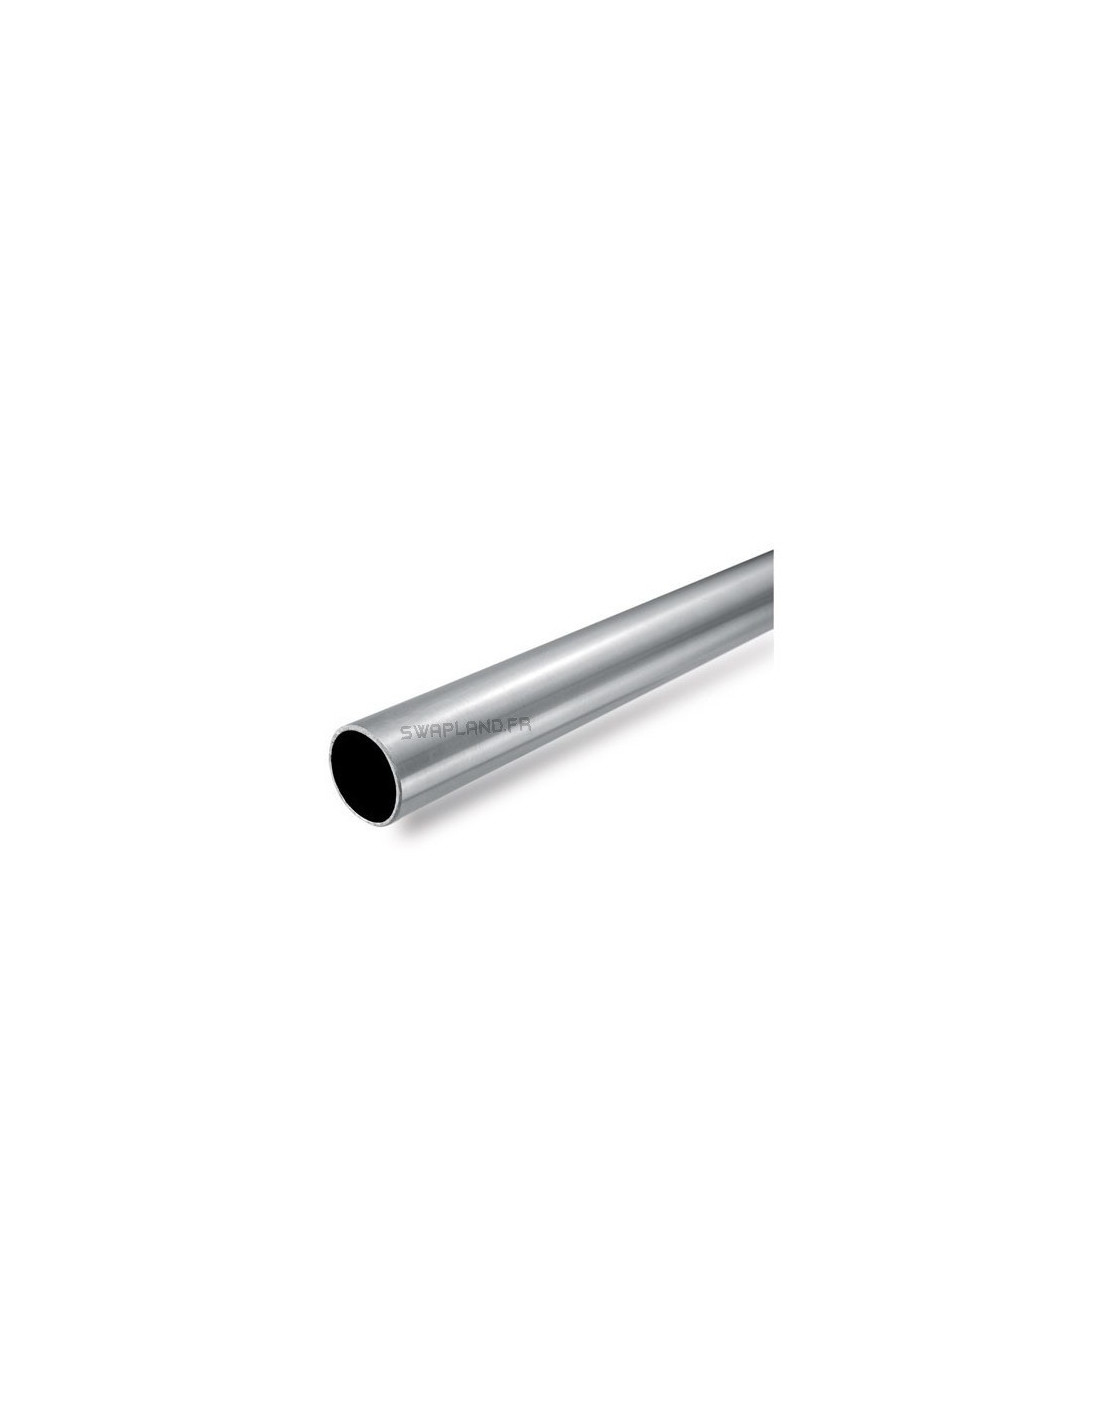 Flexible d'echappement inox pour tube diametre 42.4mm - longueur 63mm